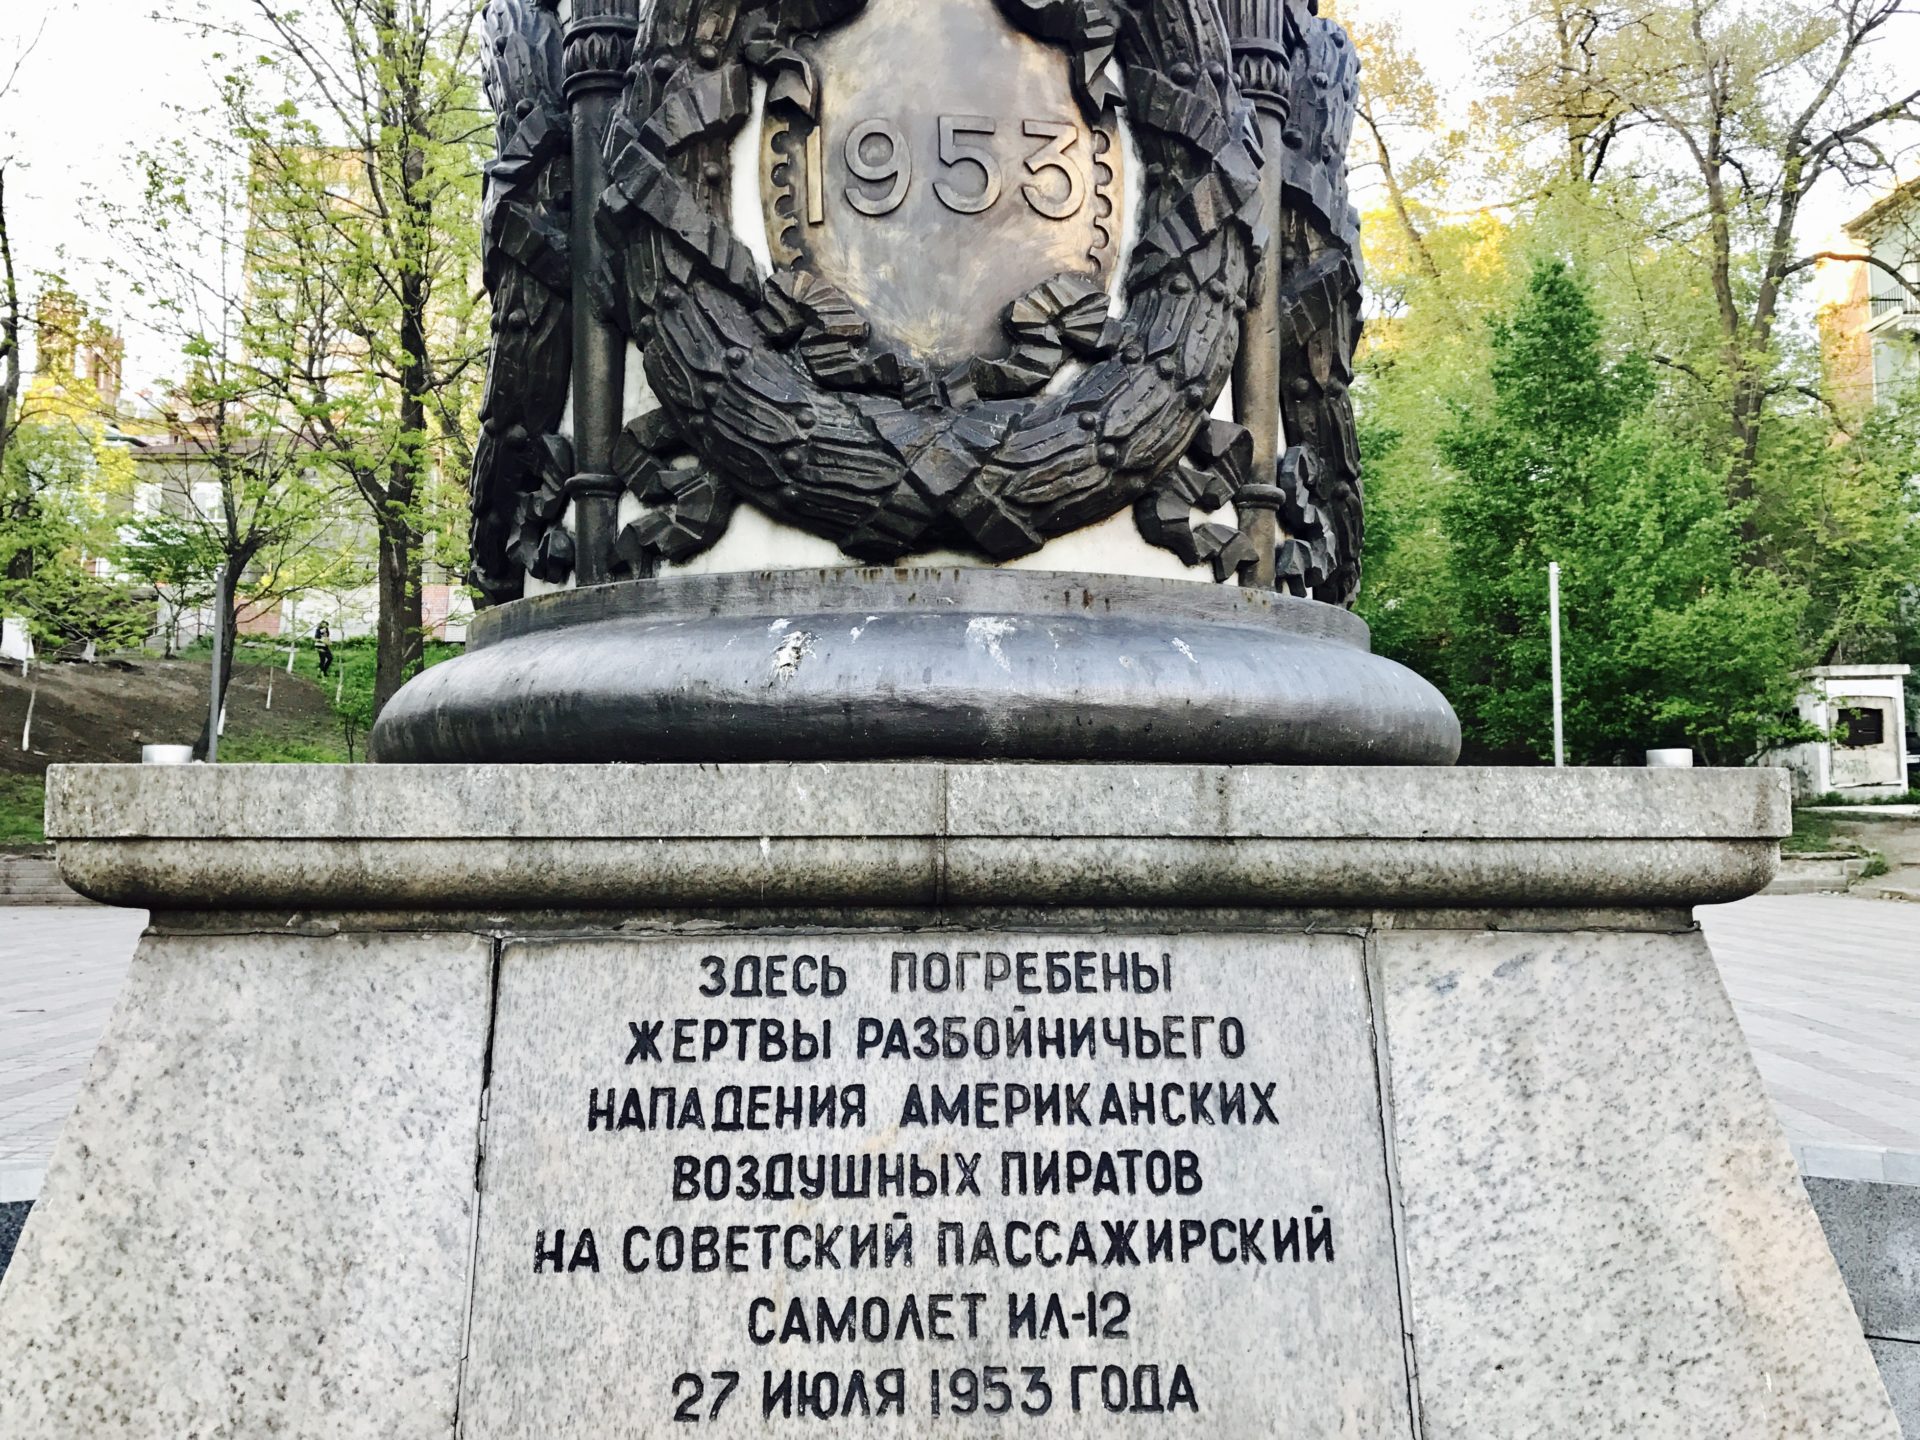 Korean War Memorials - Vladivostok - Russia